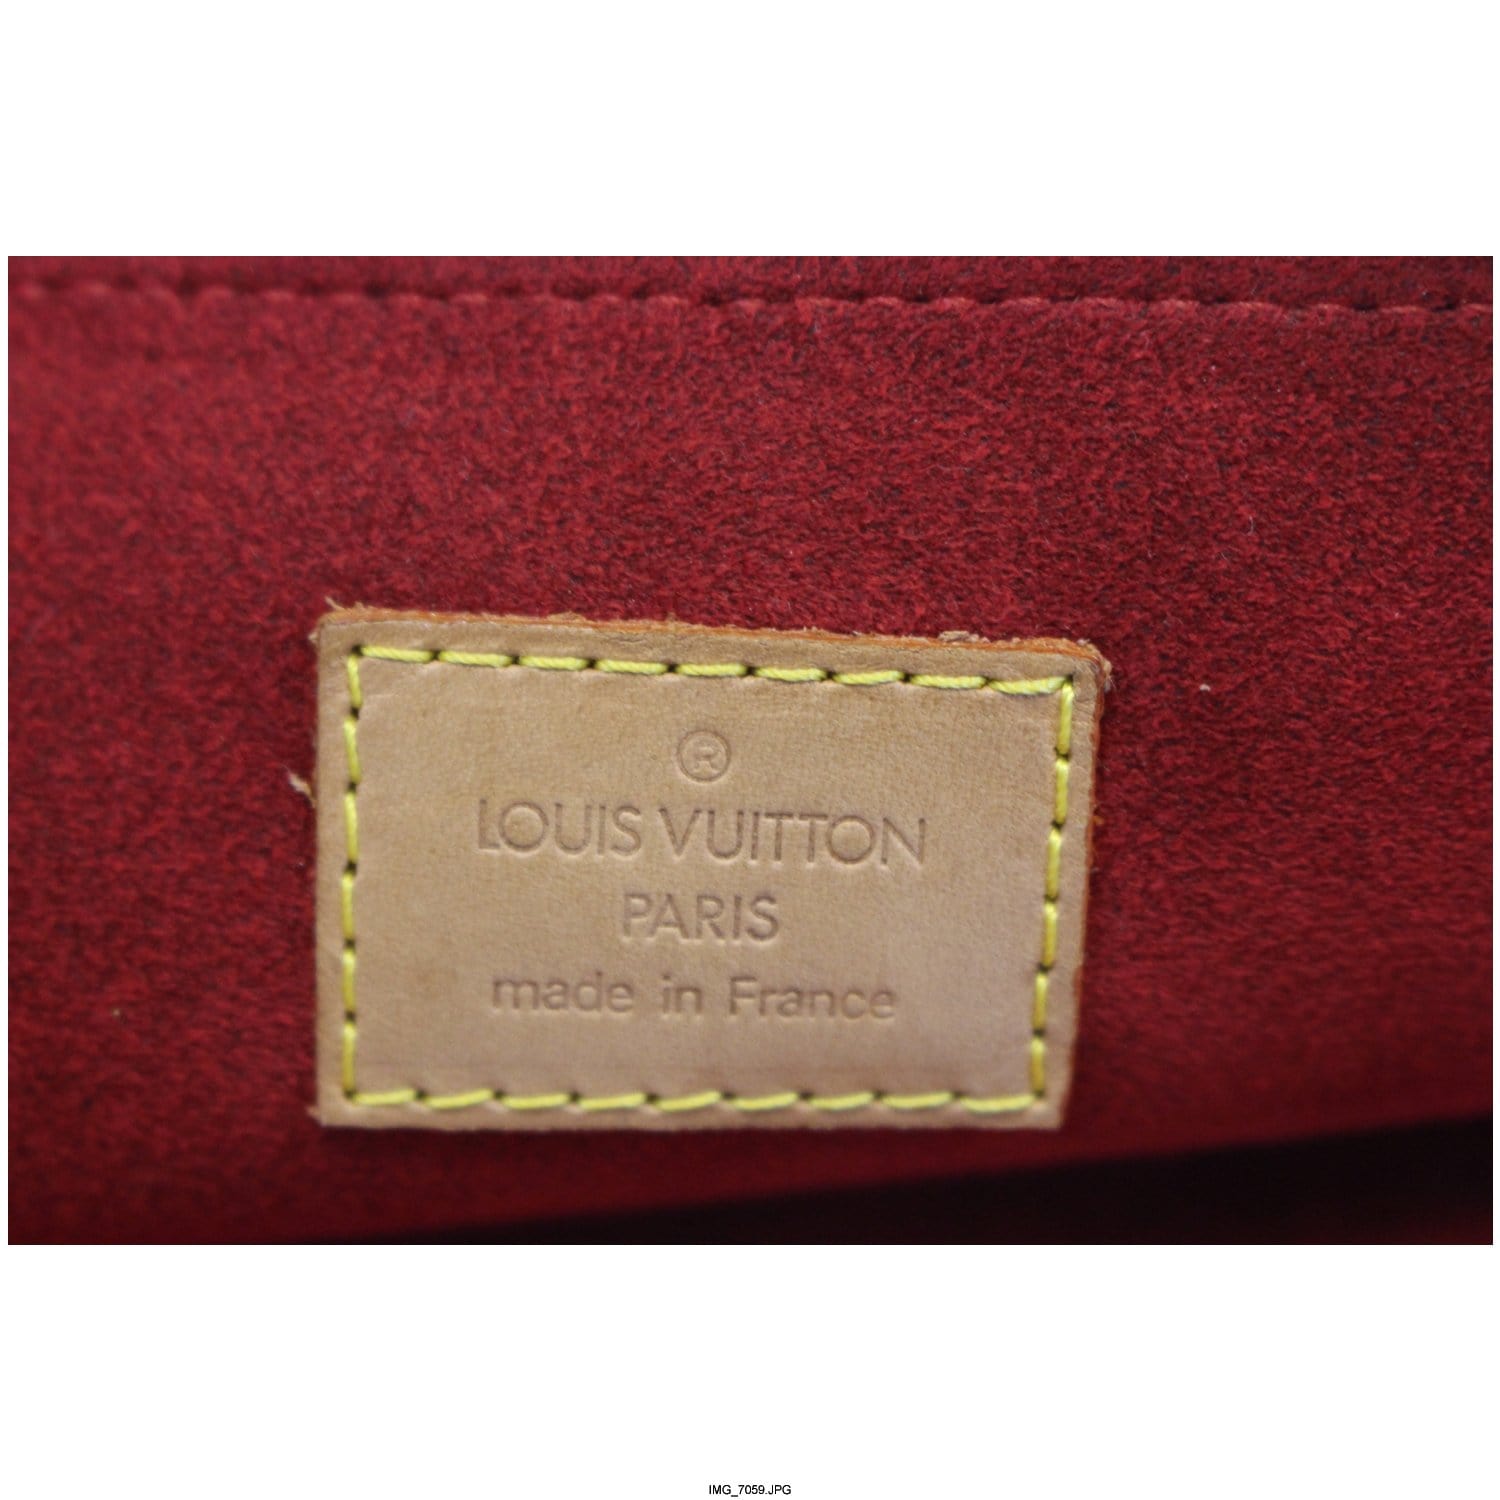 Brown Louis Vuitton Monogram Coussin GM Shoulder Bag